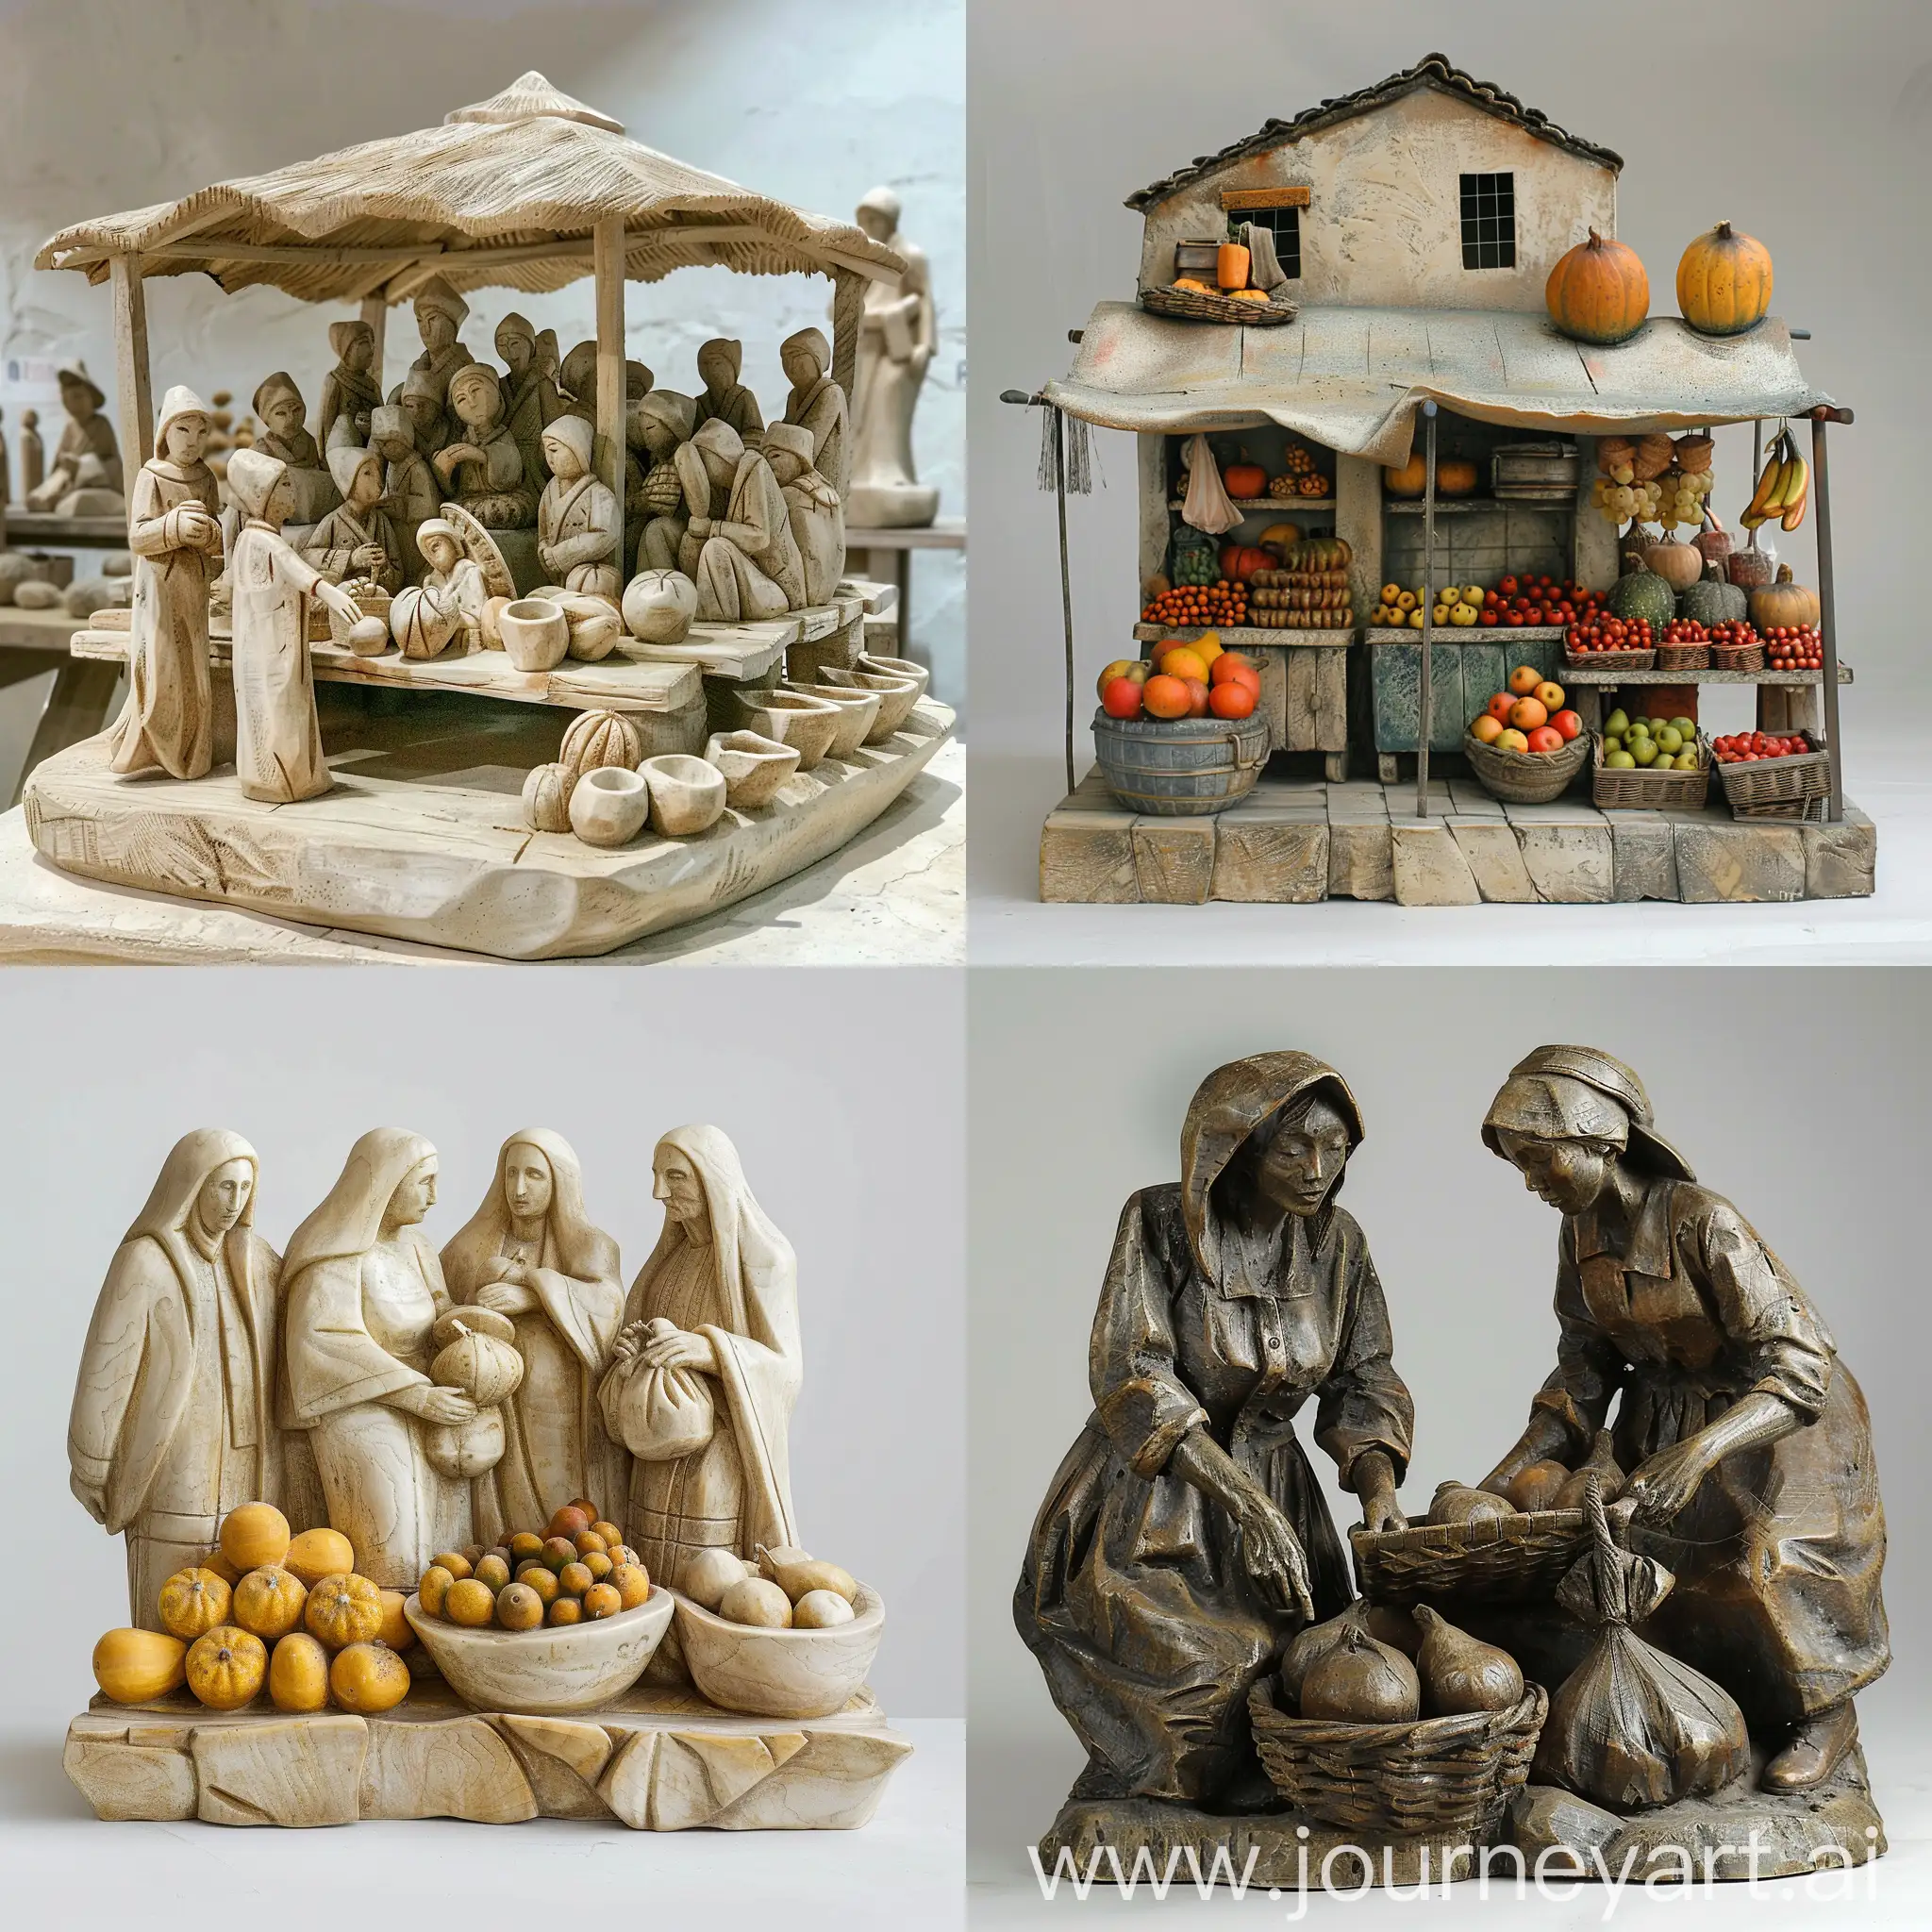 Escultura del mercado de abastos, sencilla y bonita